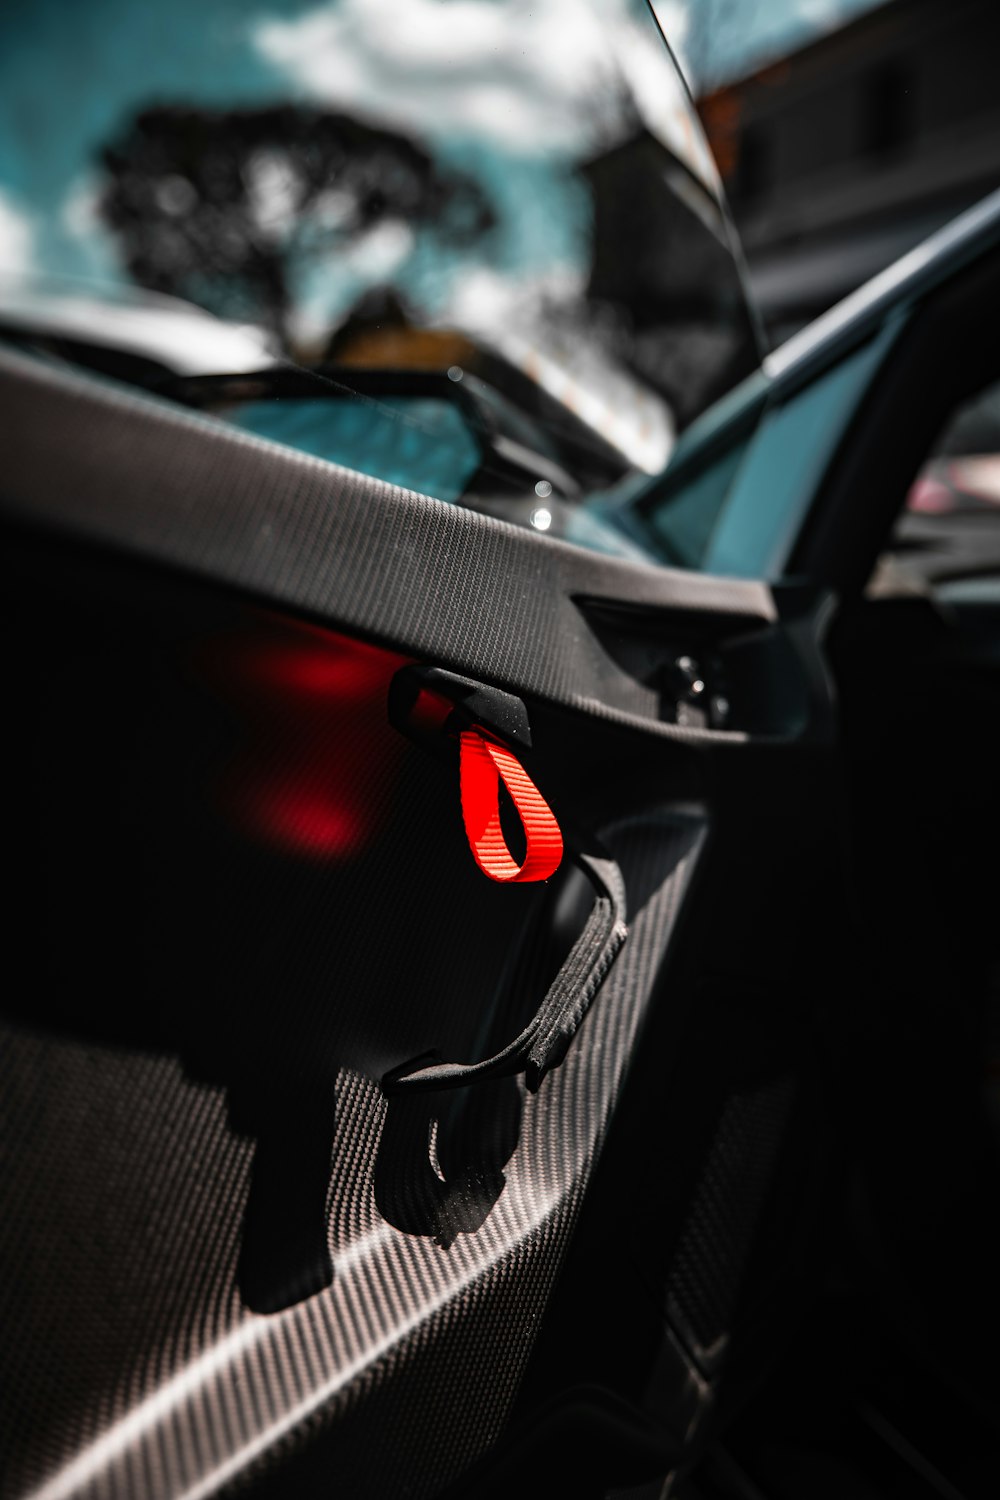 a close up of a car's brake lights